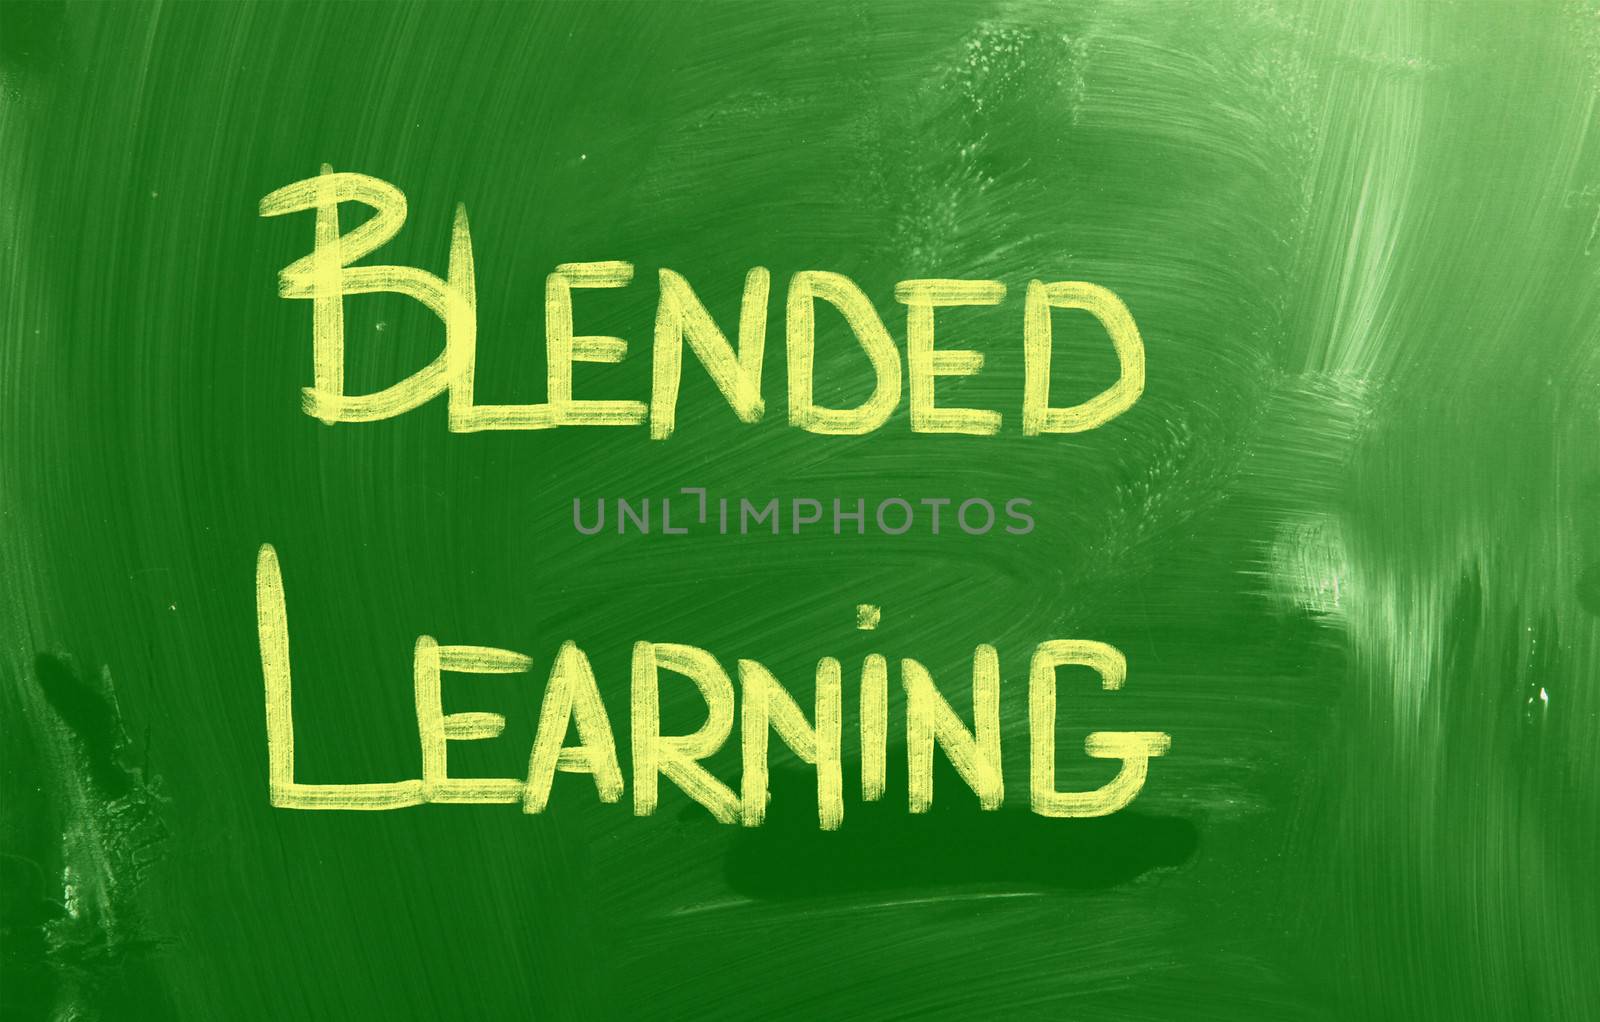 Blended Learning Concept by KrasimiraNevenova